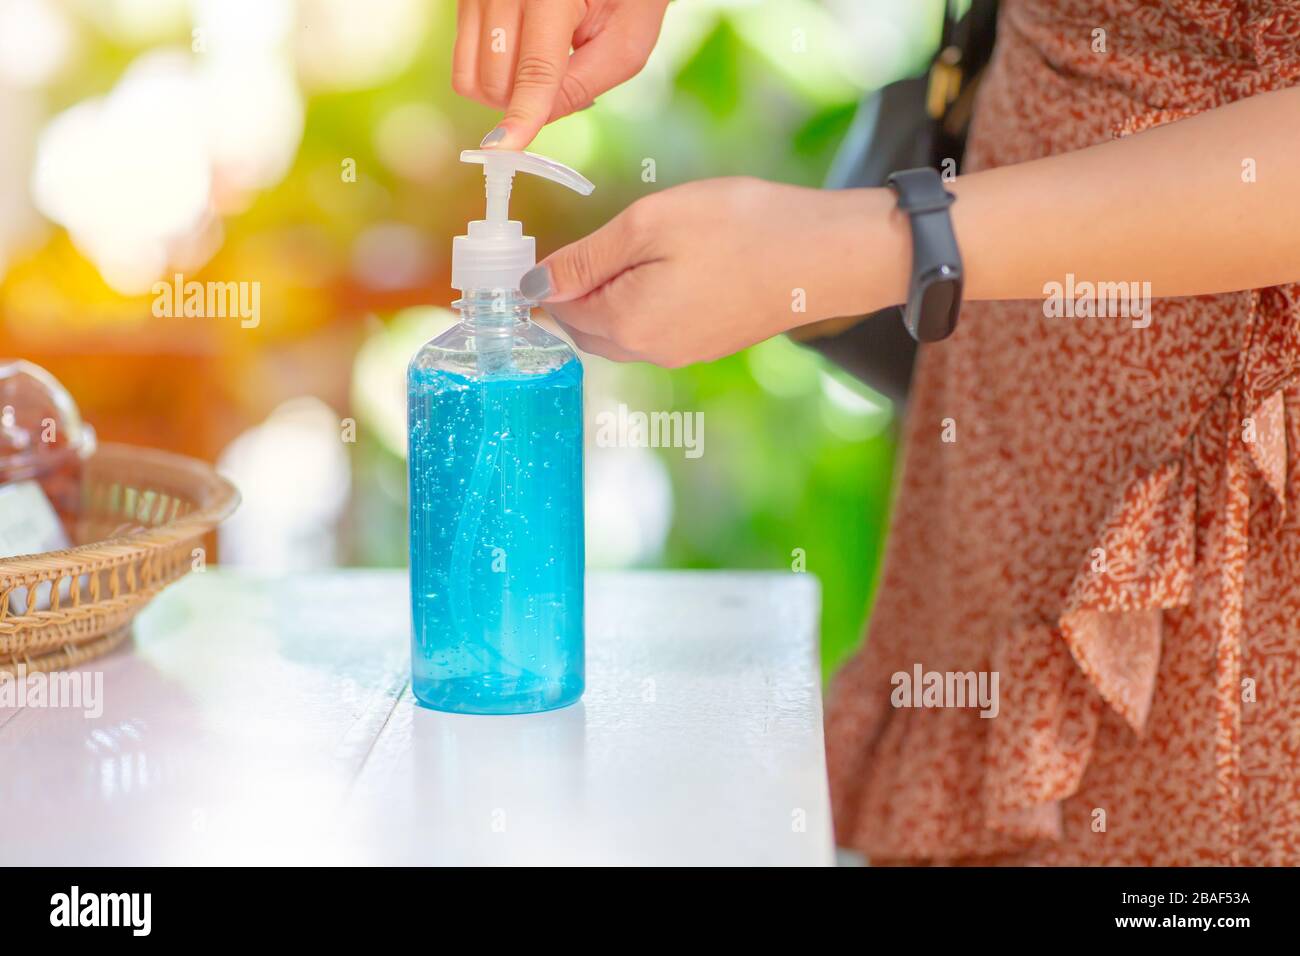 Personas limpiando las manos usando alcohol gel desinfectante para manos para anti becteria y proteger contra brotes de virus de la enfermedad de Coronavirus 2019 (COVID-19). Foto de stock